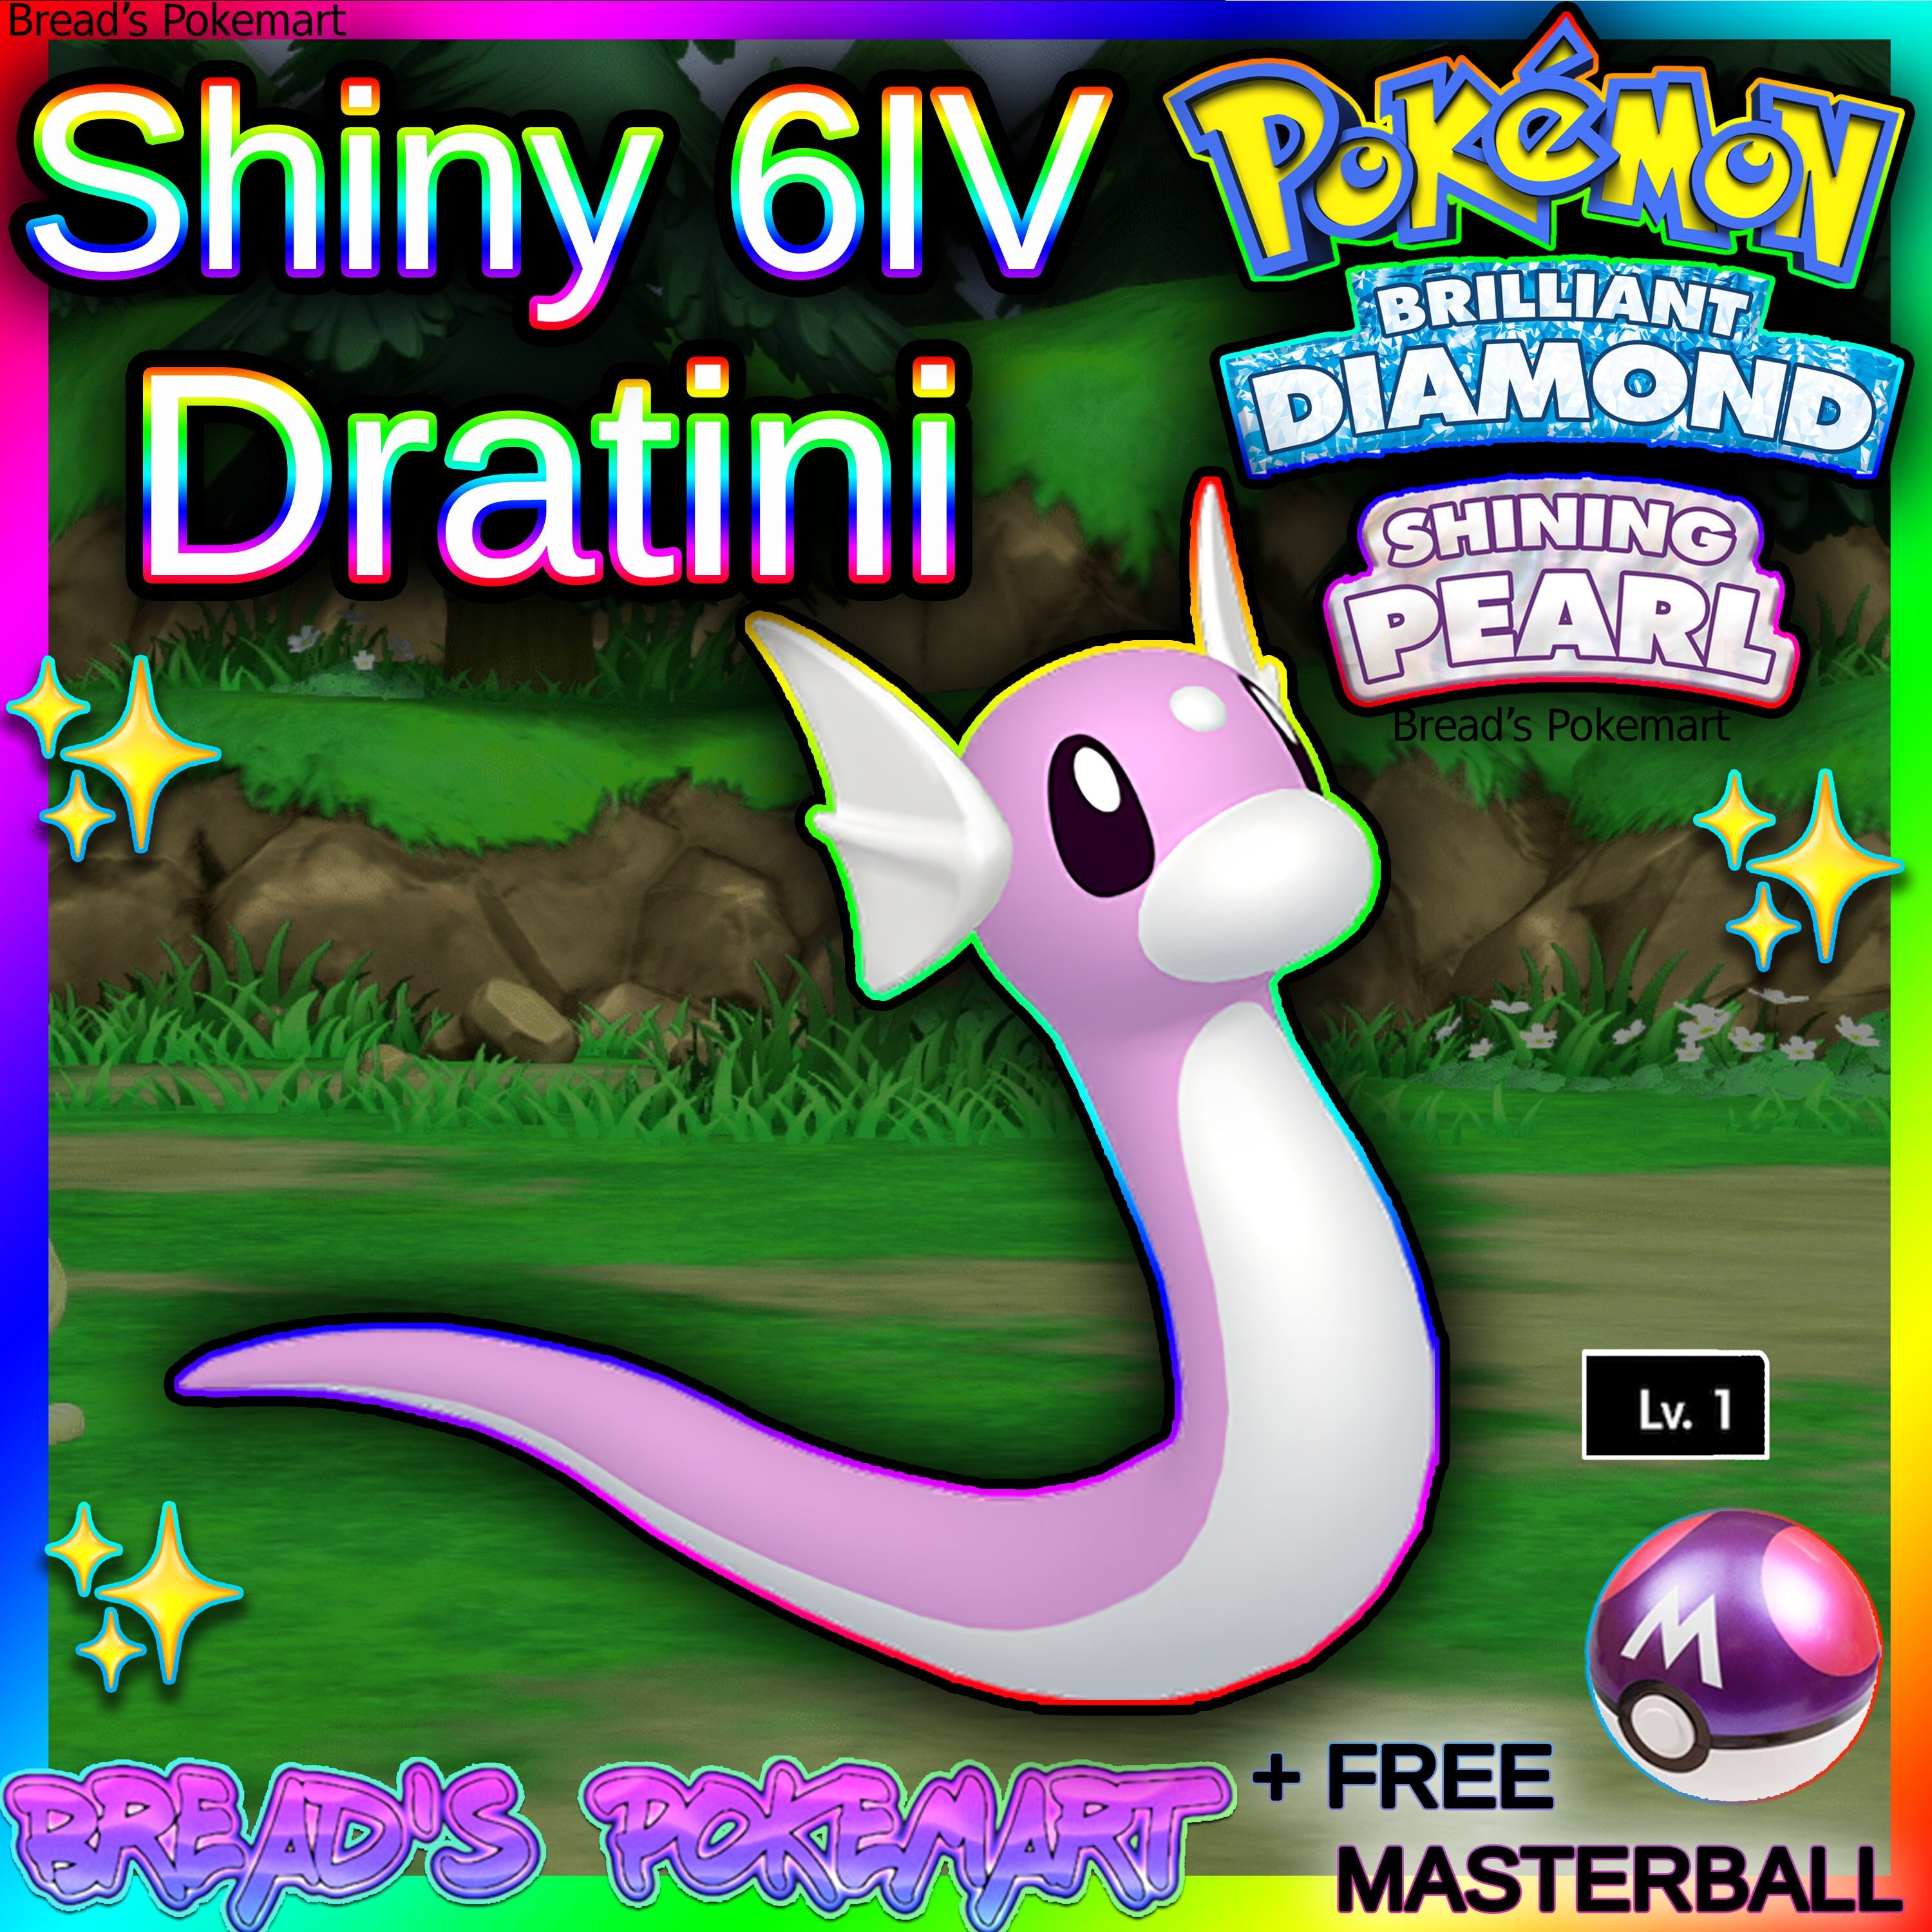 Found Shiny Articuno! : r/PokemonLetsGo